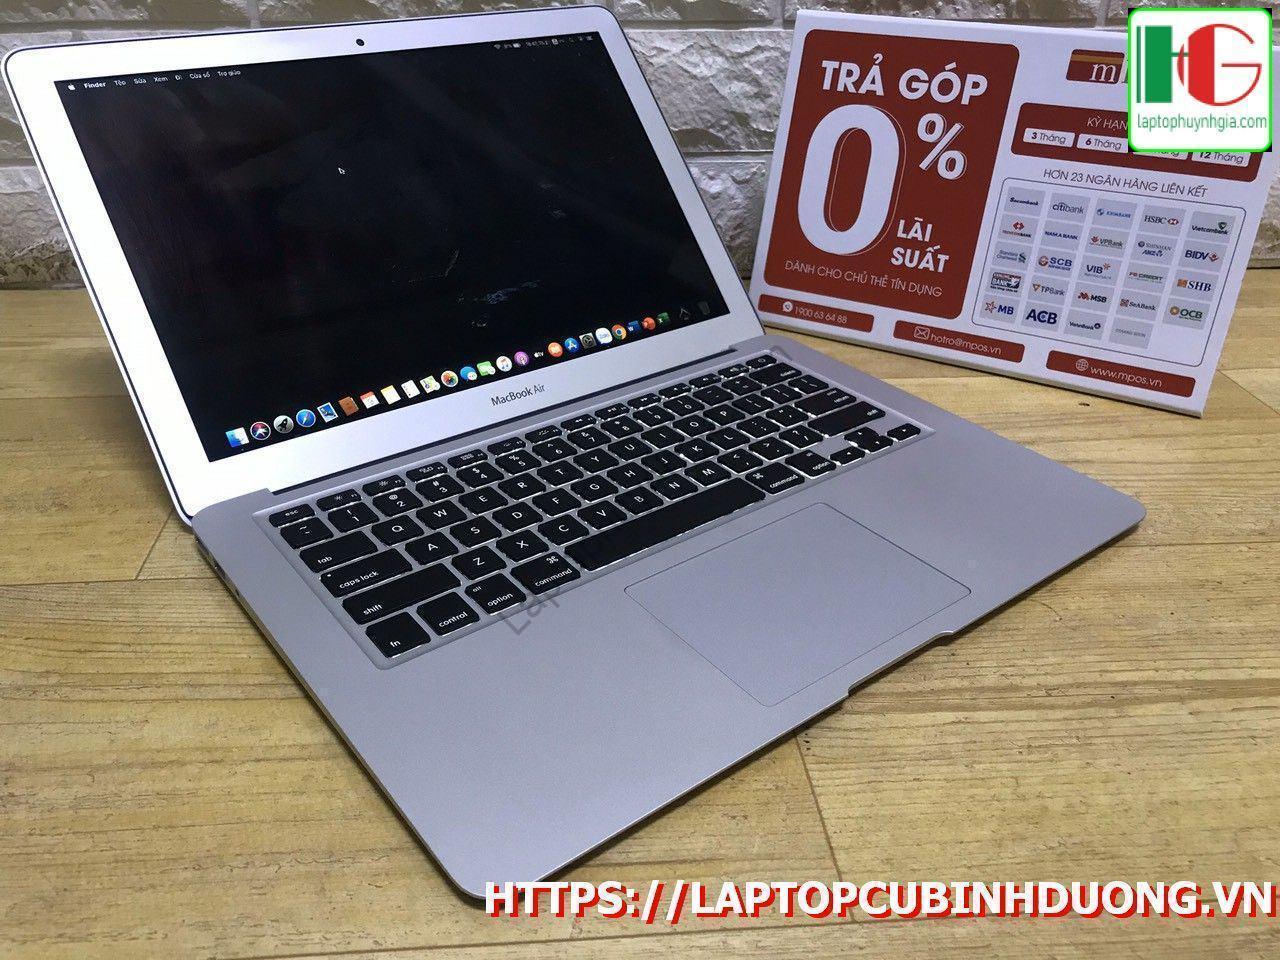 Macbook Air 2017 I5 8g Ssd 128g Lcd 13 Laptopcubinhduong.vn 3 [kích Thước Gốc] Result